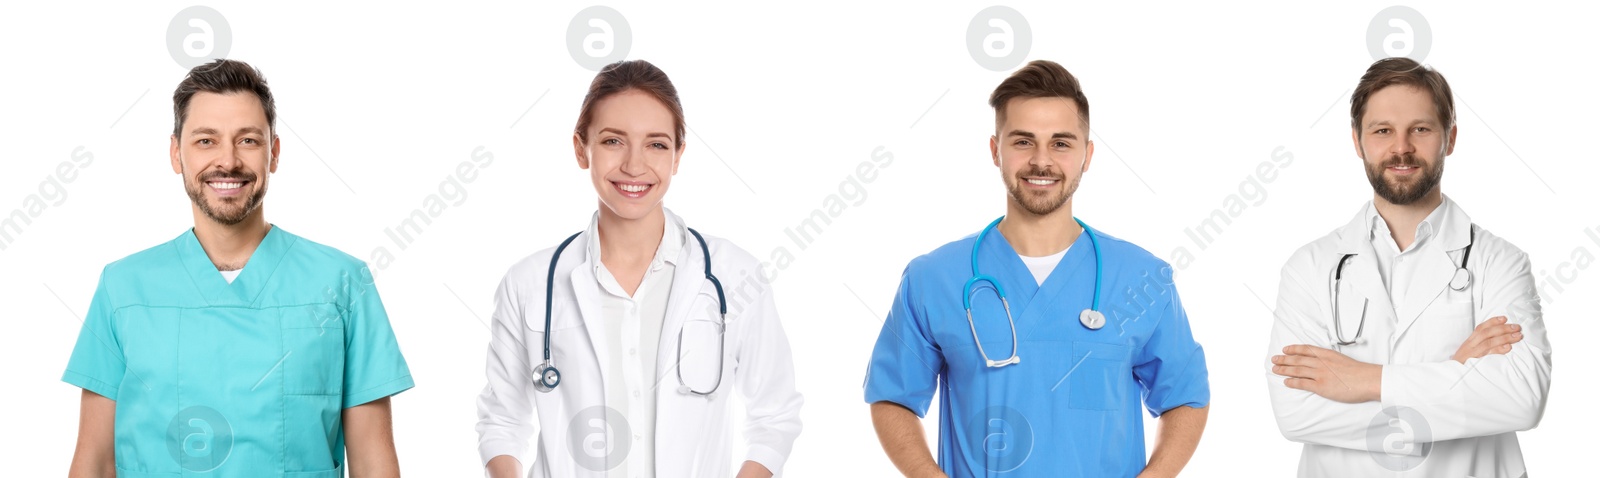 Image of Happy medical nurses on white background, set of photos